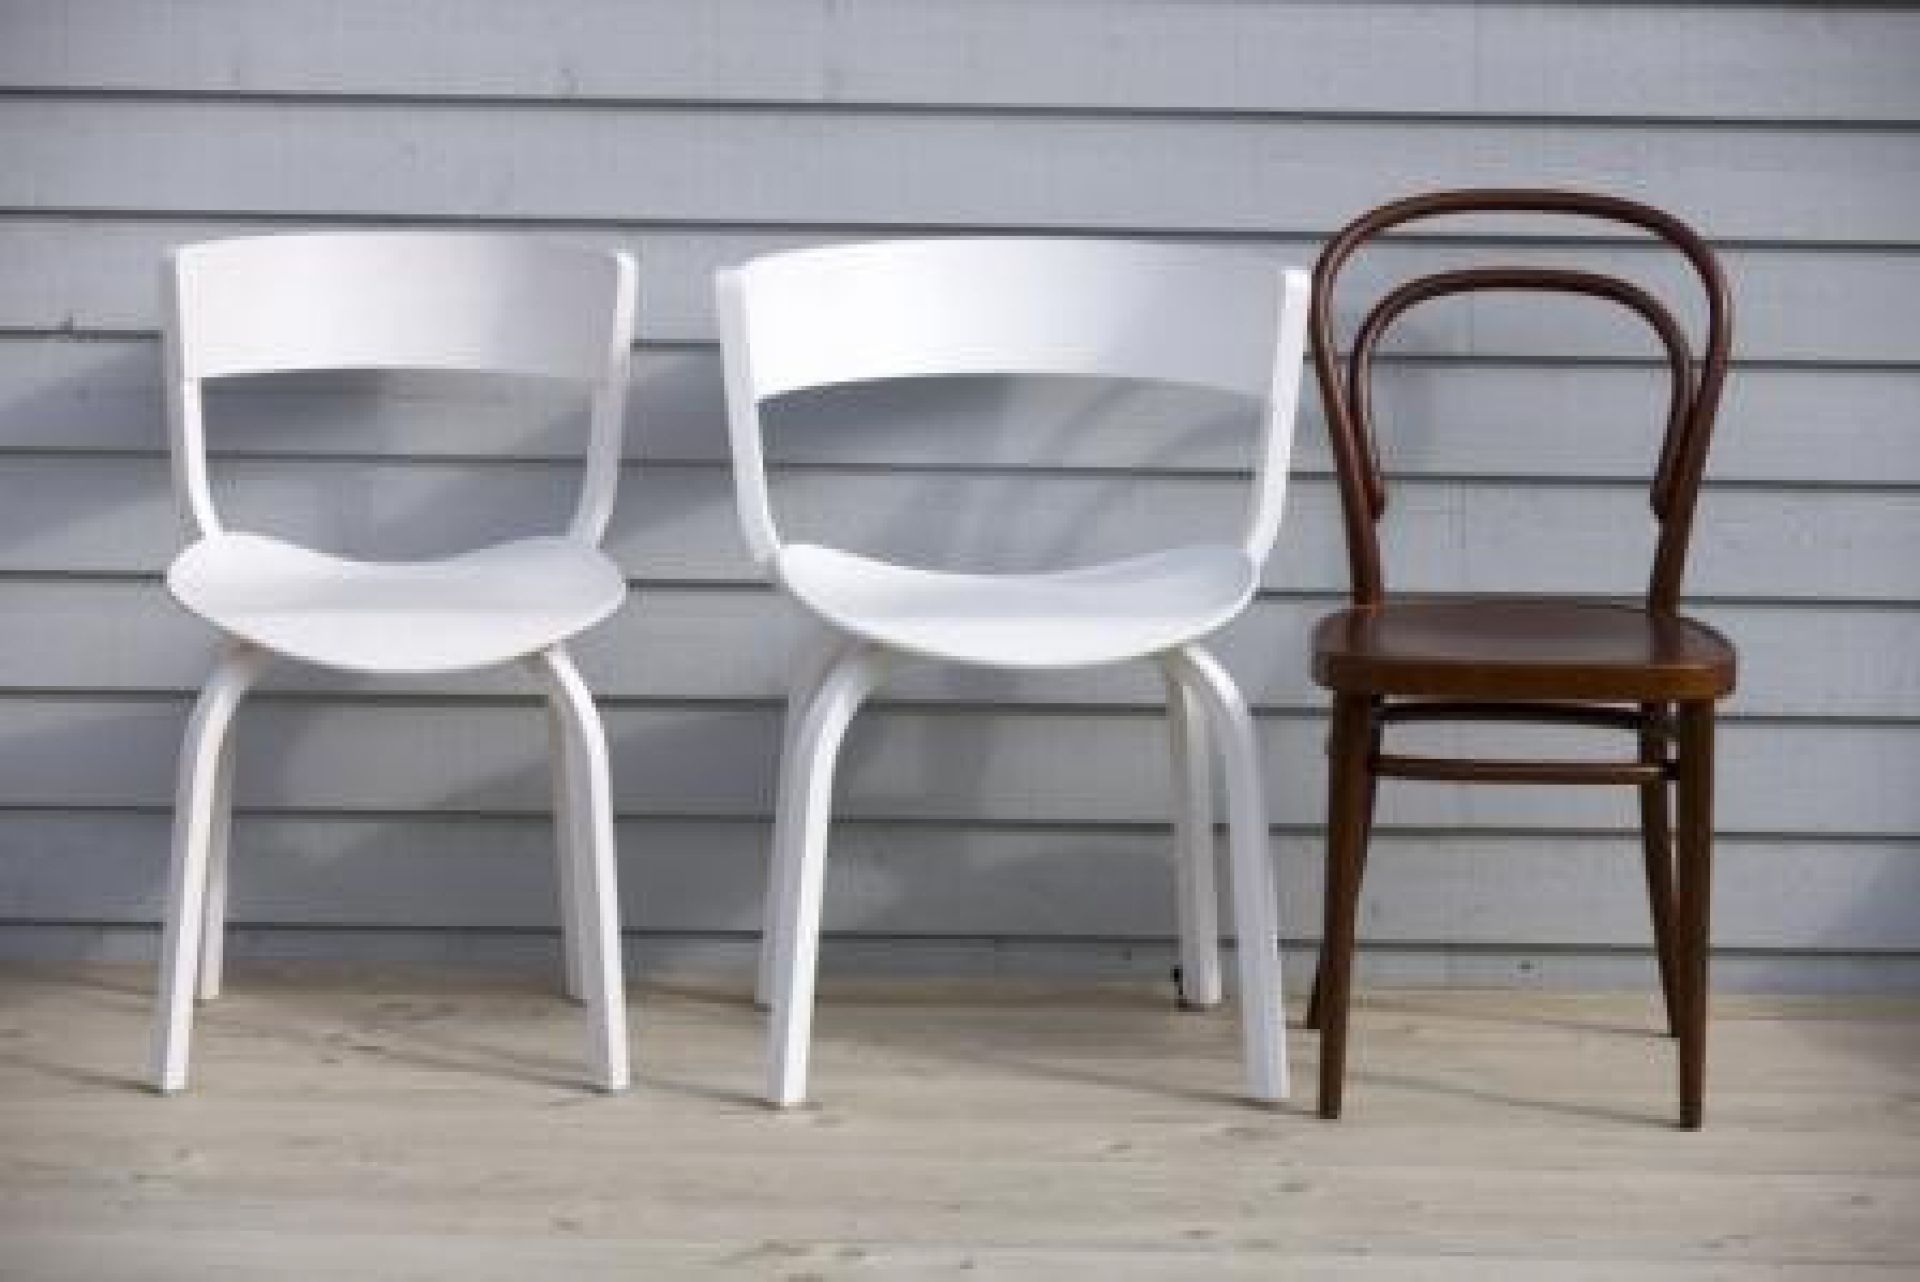 214 M / 214M Bentwodd Chair - Café chair Thonet